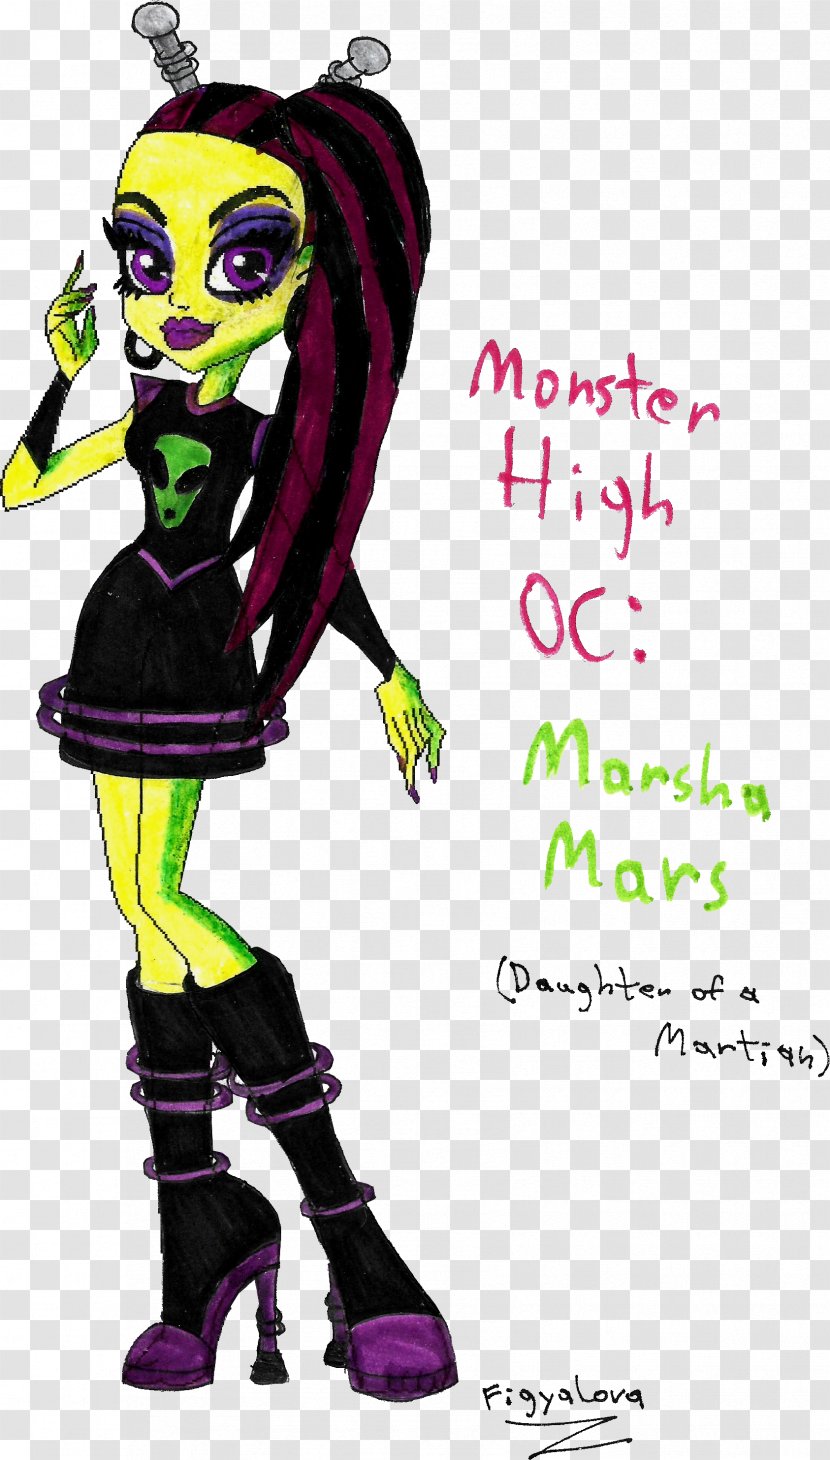 Monster High DeviantArt Art Museum Cartoon - Character - Marsha Transparent PNG